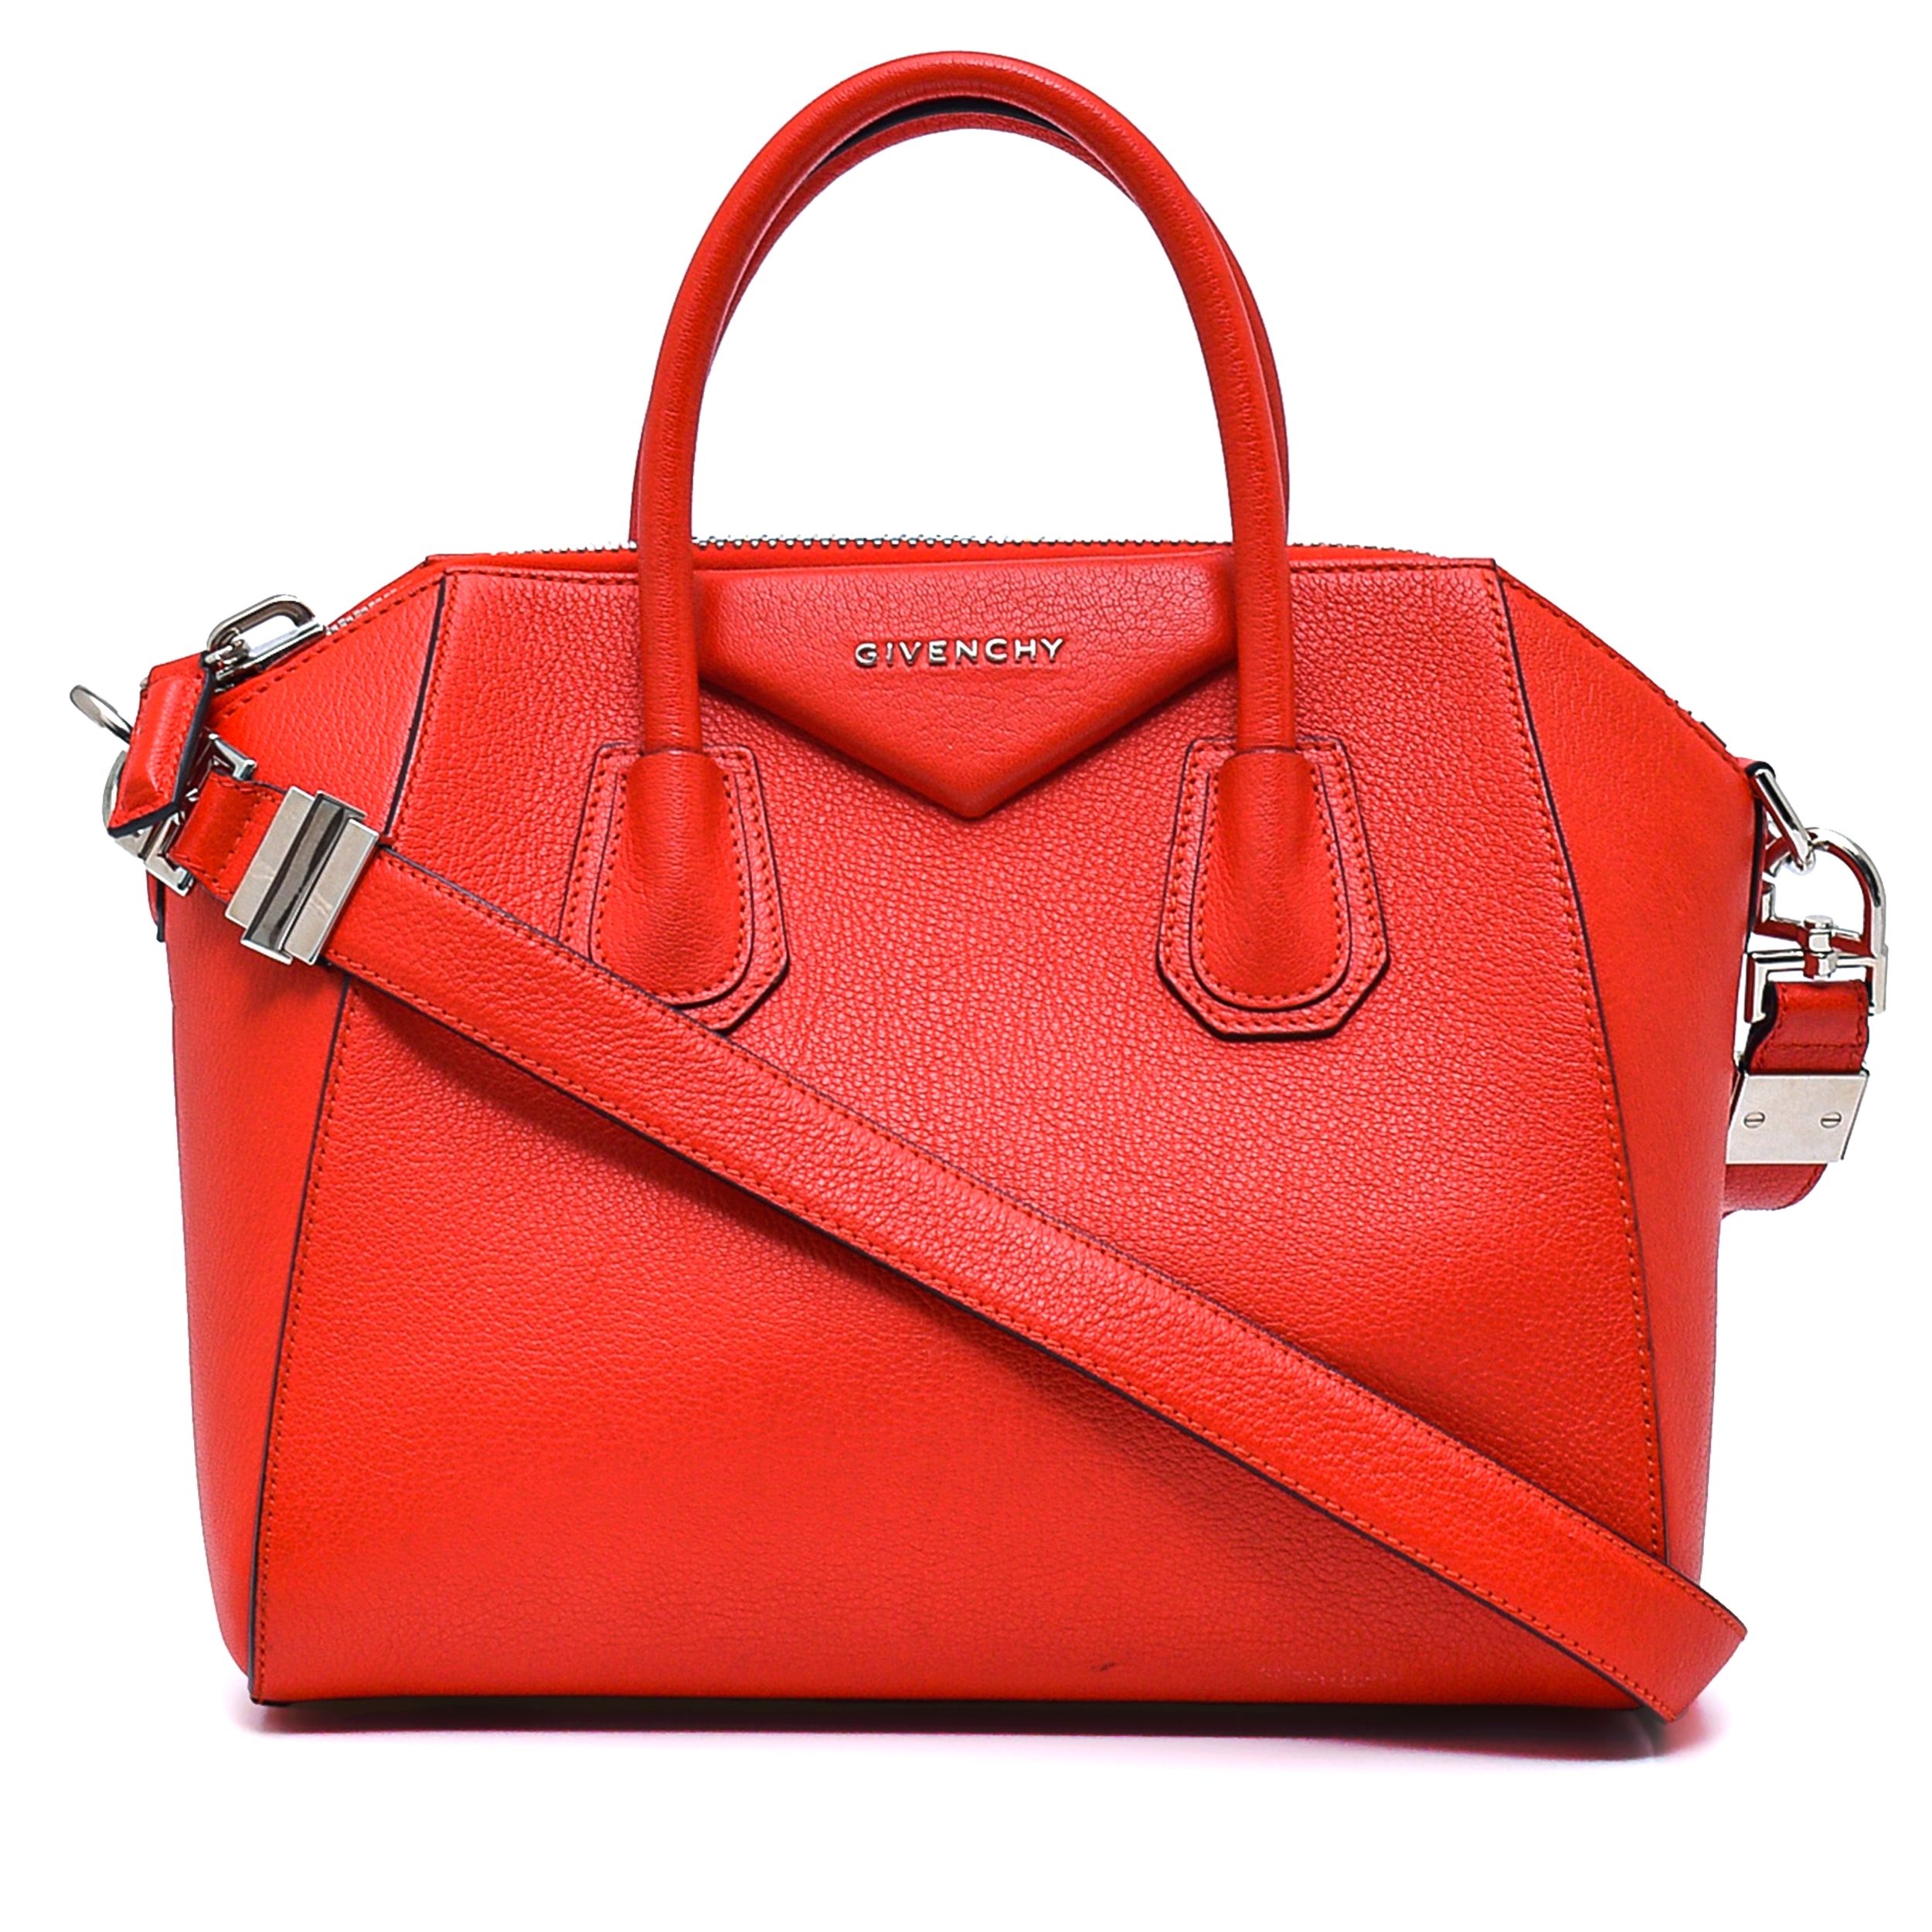 Givenchy - Red Leather Small Antigona Bag